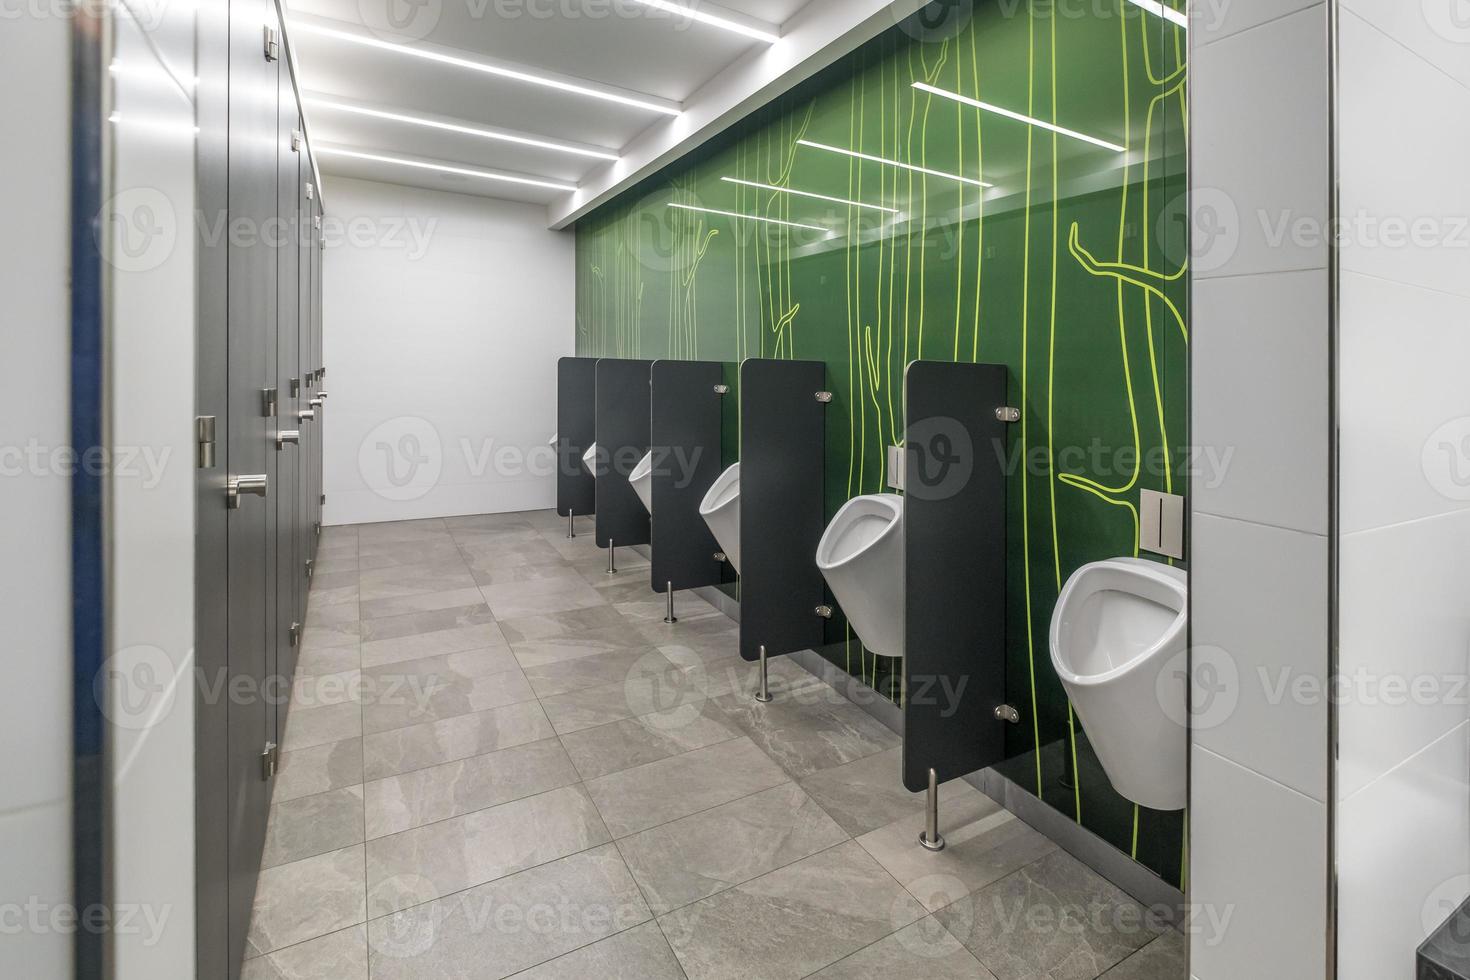 stilvolle innentoilette in moderner öffentlicher toilette foto